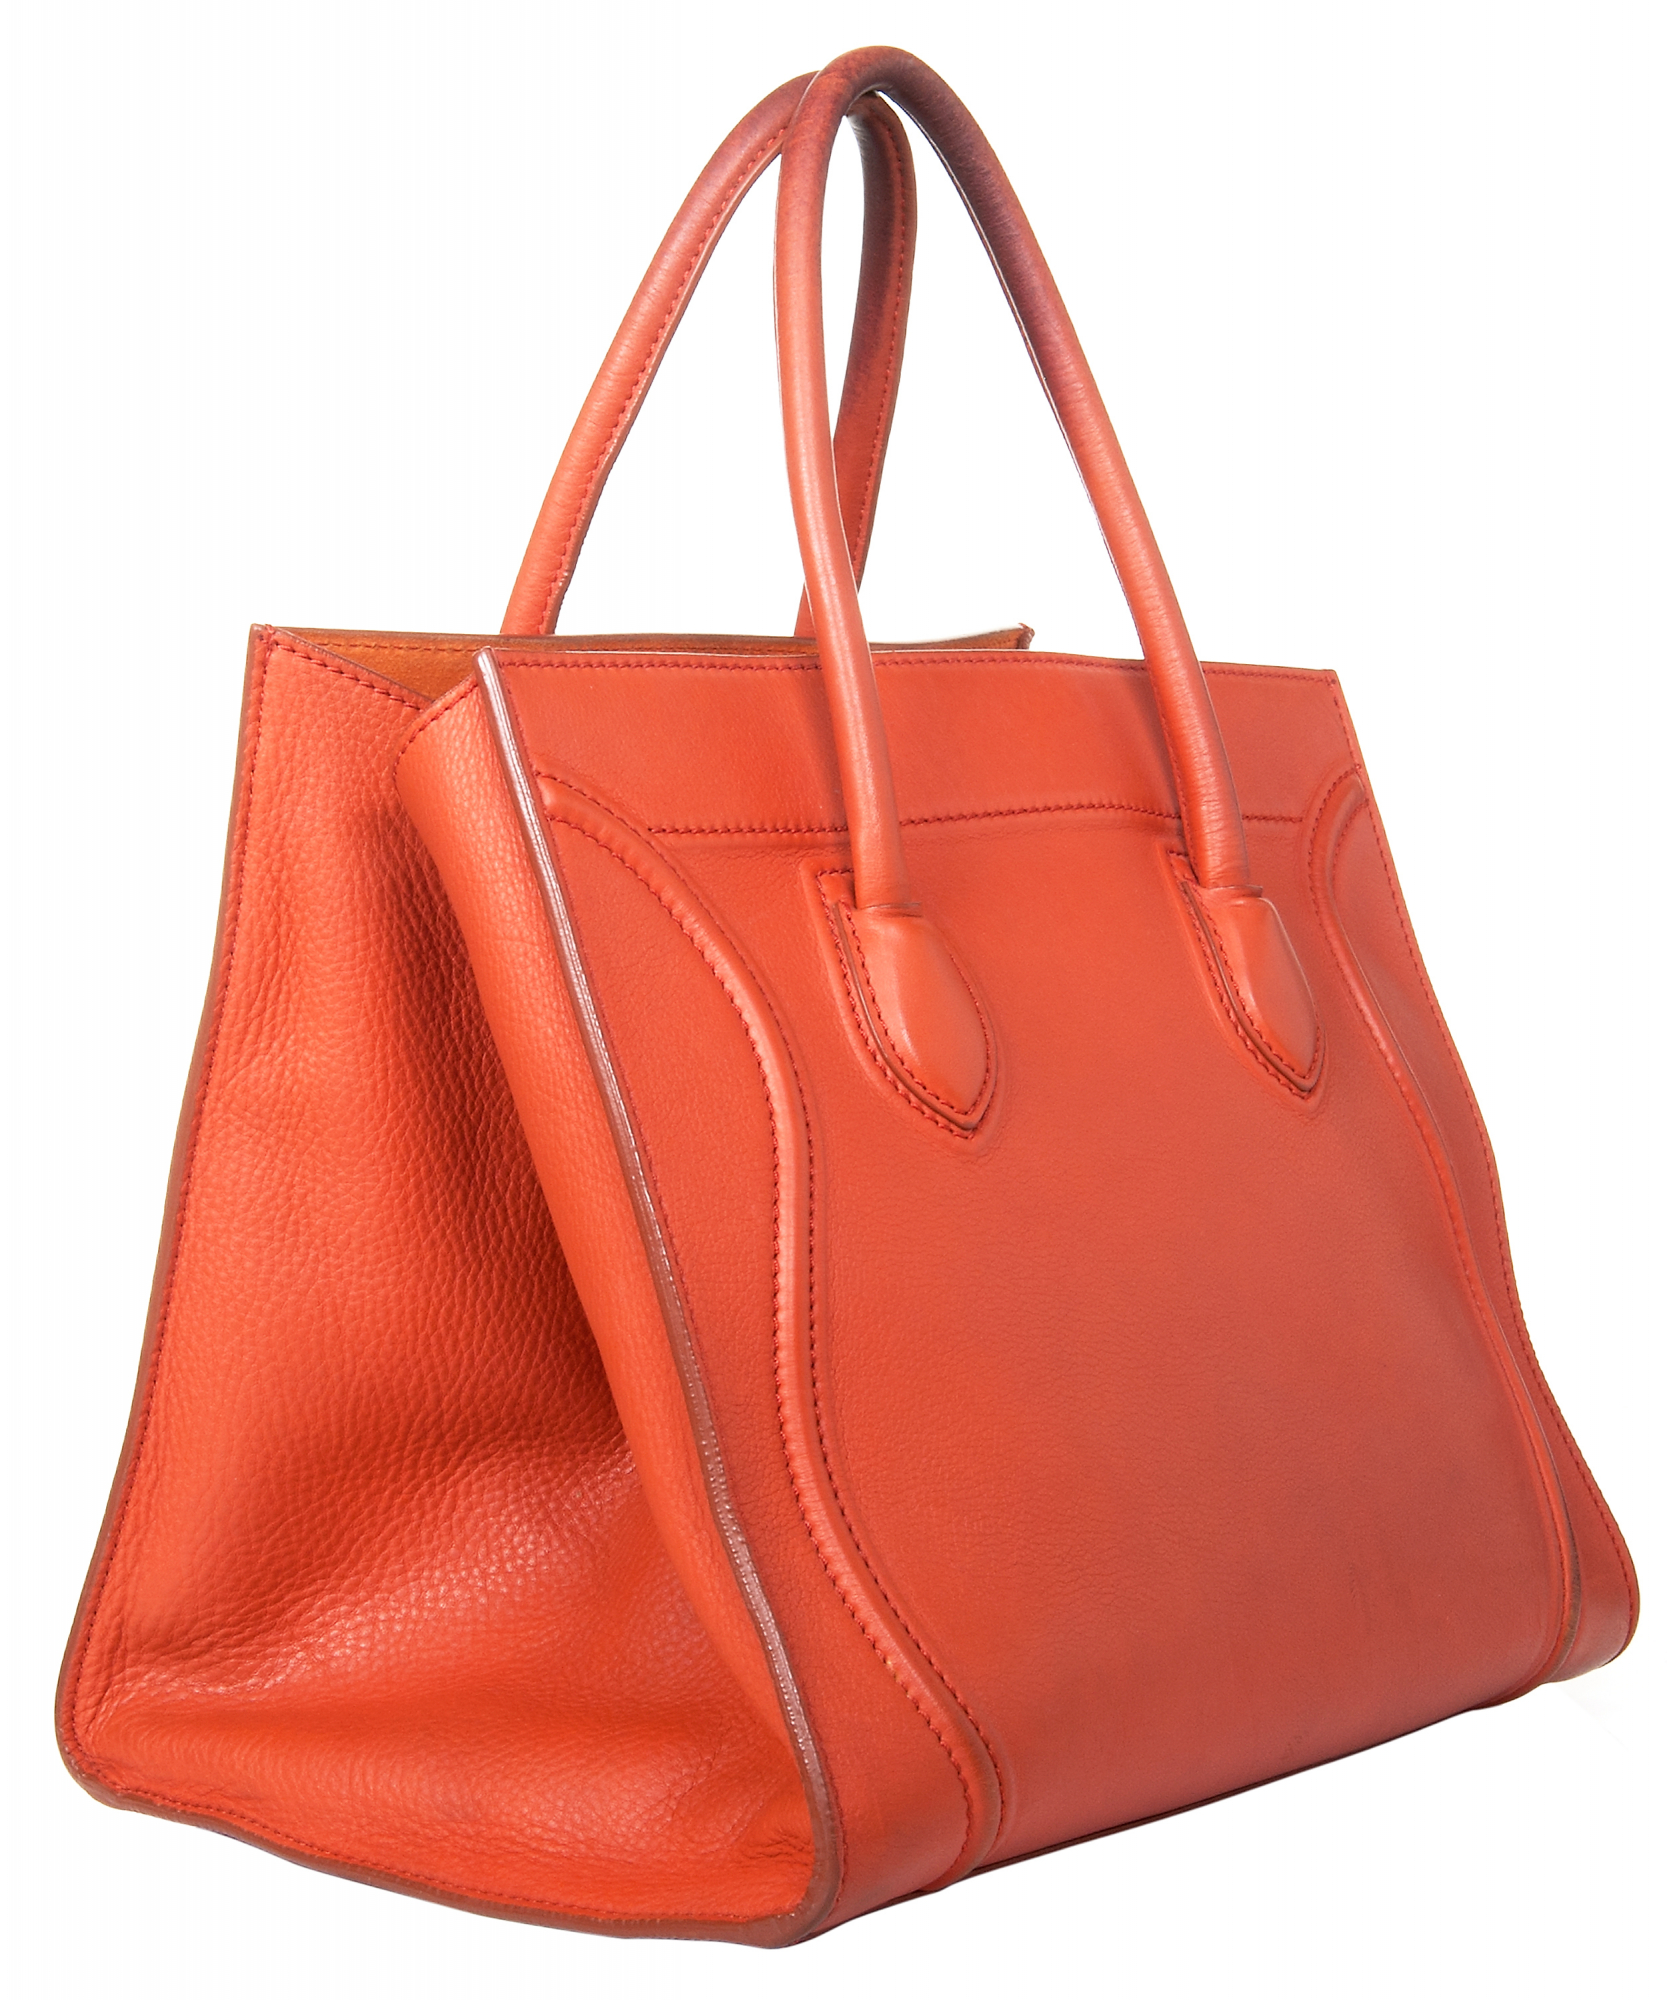 Céline Medium Luggage Phantom Bag in Orange Bullhide Calfskin - Celine ...